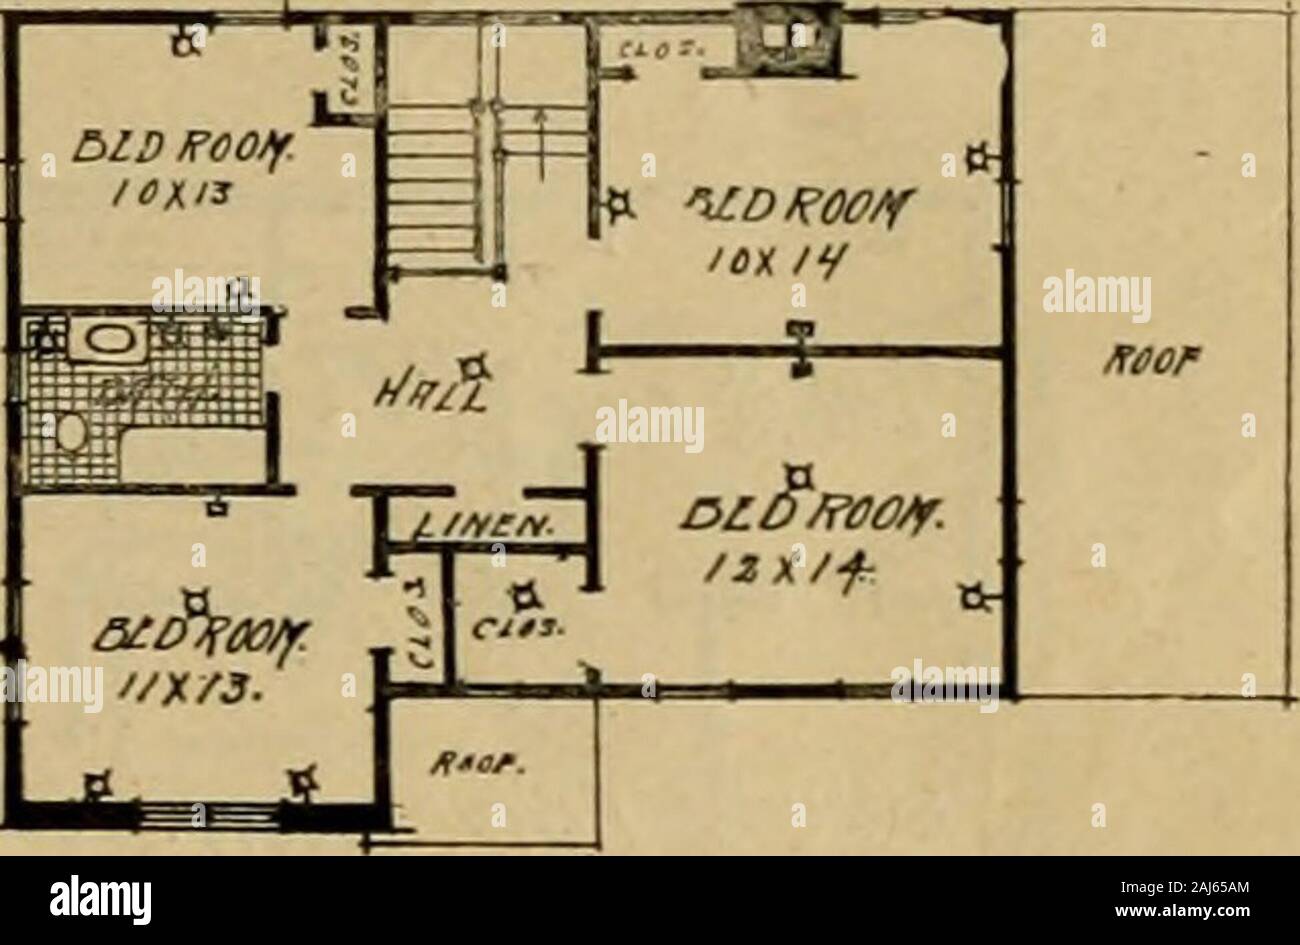 Boston Herald-Traveler's Buch der Häuser: Wie planen, finanzieren und Ihr  Haus bauen. R L 5 UVlH: Ich 6 HJnMCT. n/iJT nocK PiM JZCO//V Noa/e  p/^//Plan Nr. 113 Dieses attraktive Haus der Ziegel